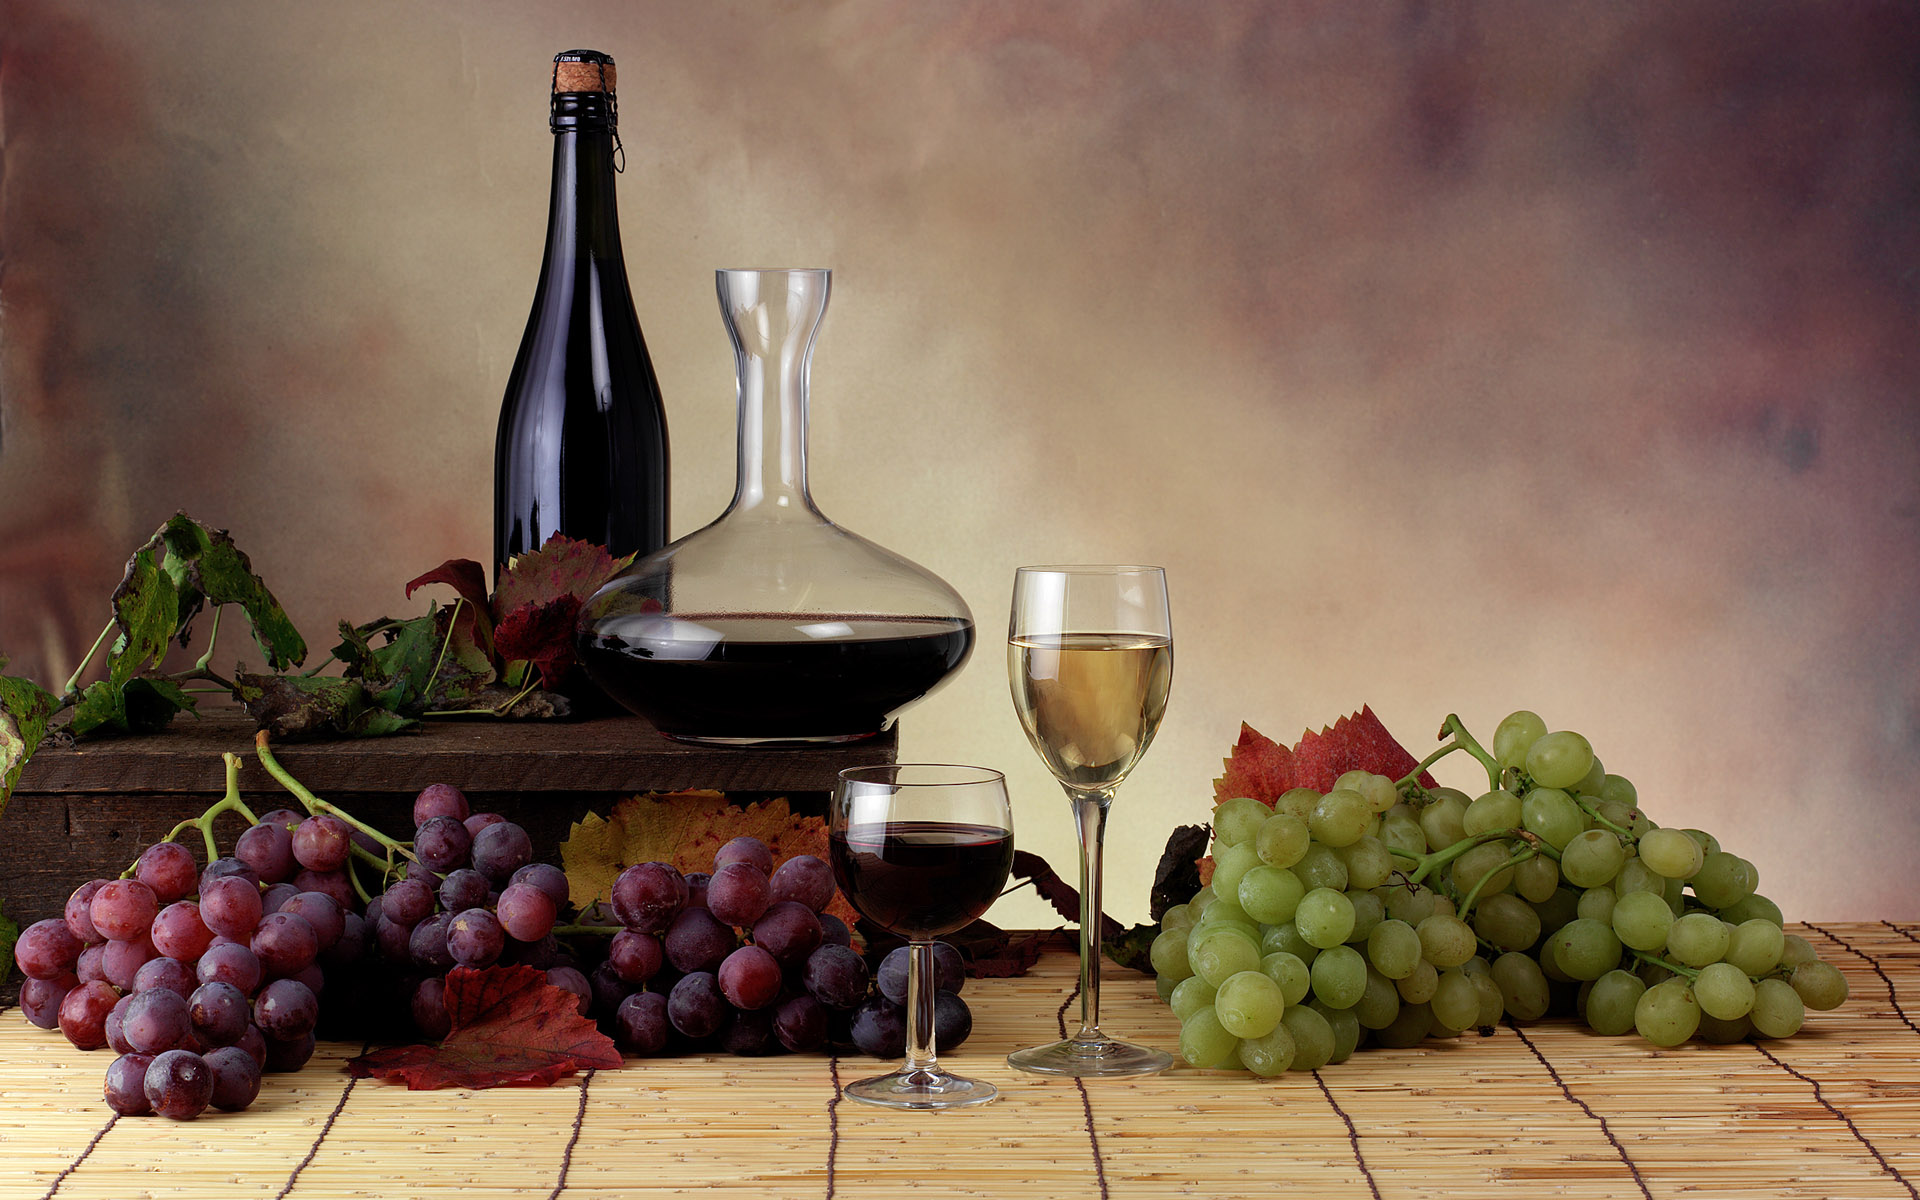 food, grapes, wine - desktop wallpaper